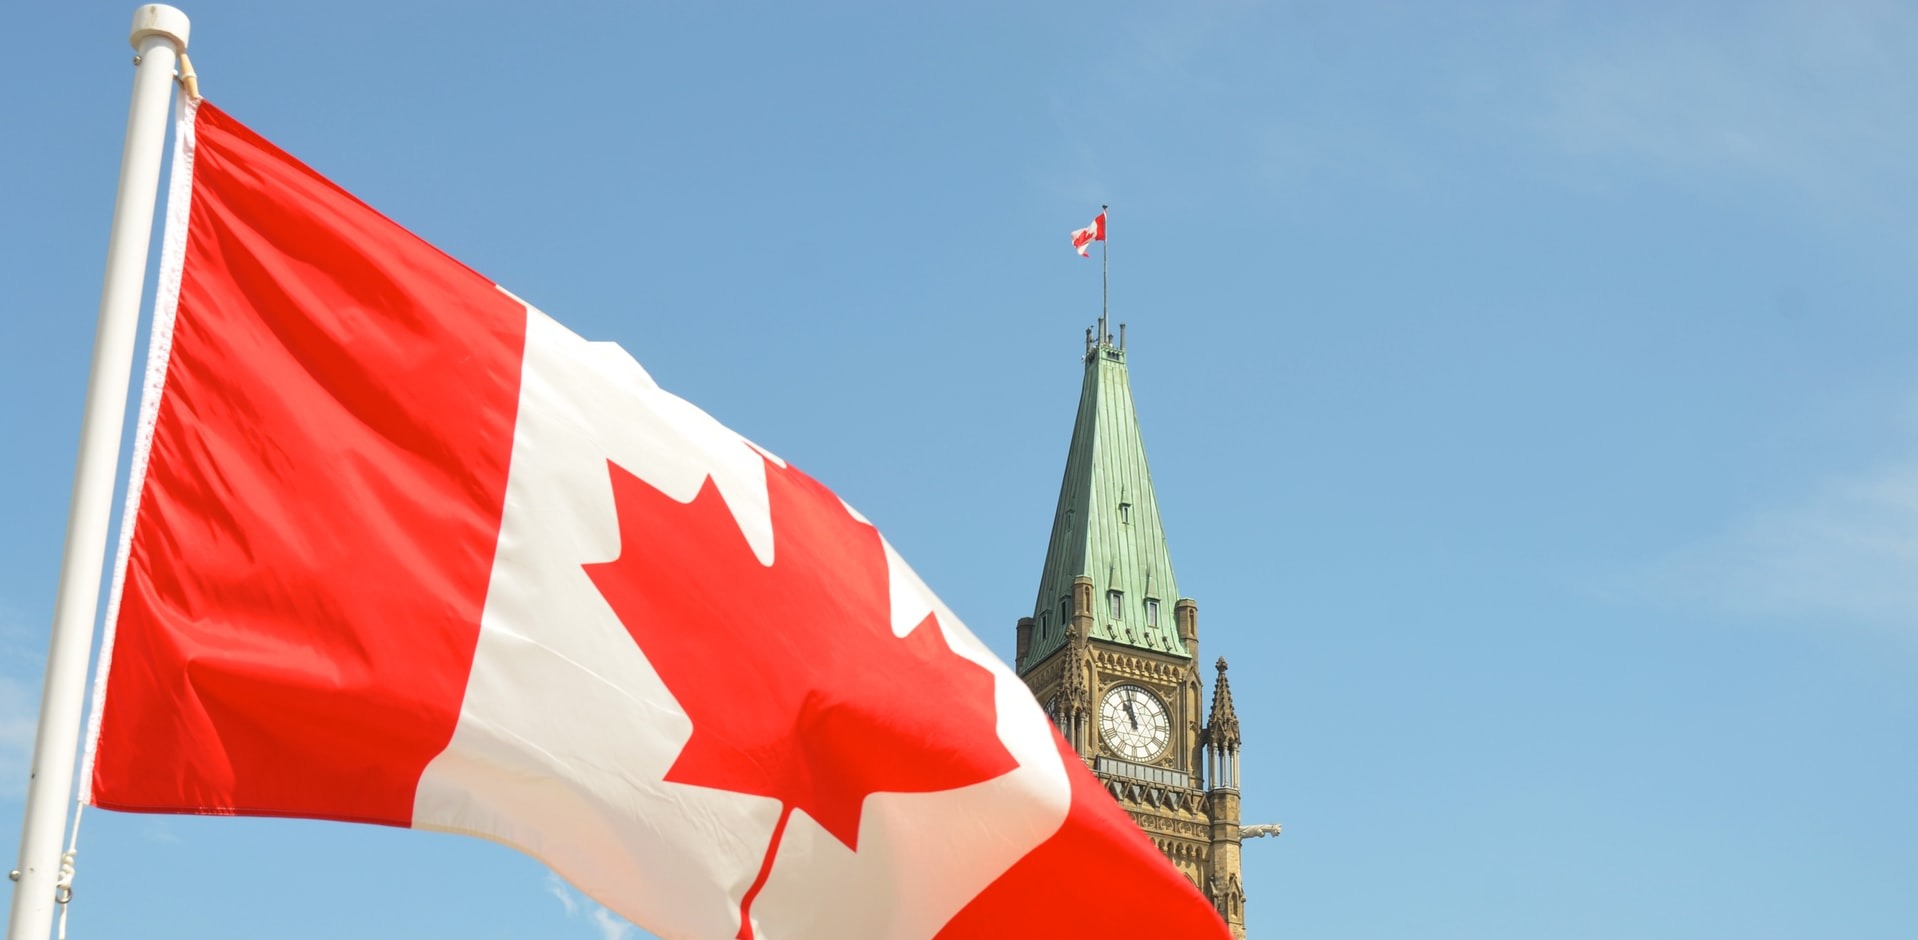 Canada-Flag-with-Peace-Tower-JCI-Senate